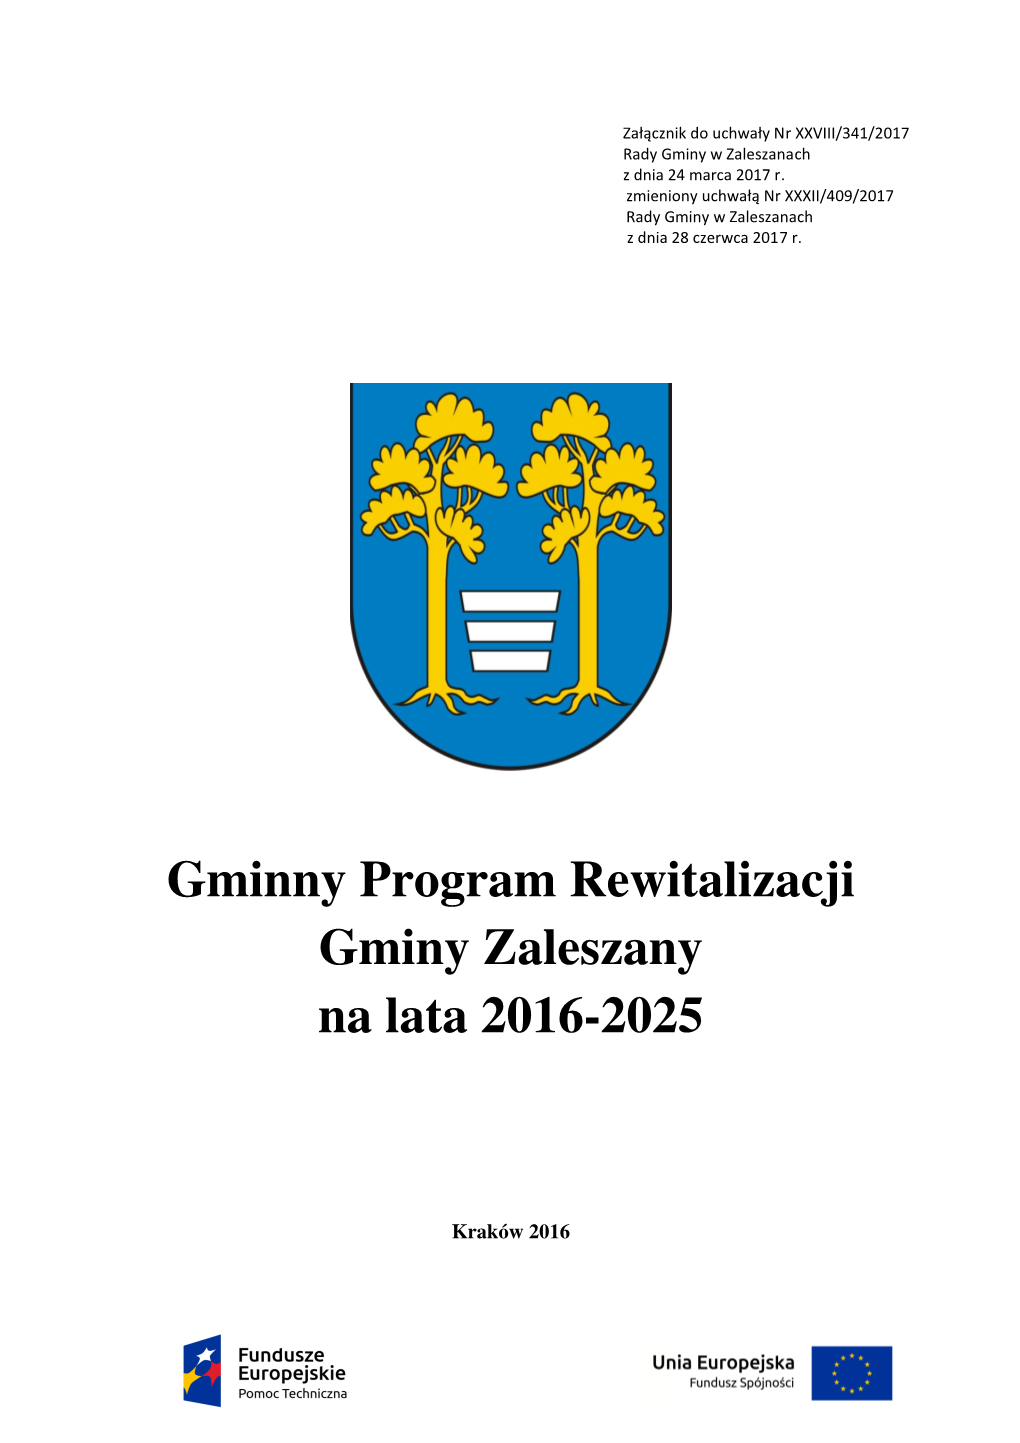 Gminny Program Rewitalizacji Gminy Zaleszany Na Lata 2016-2025